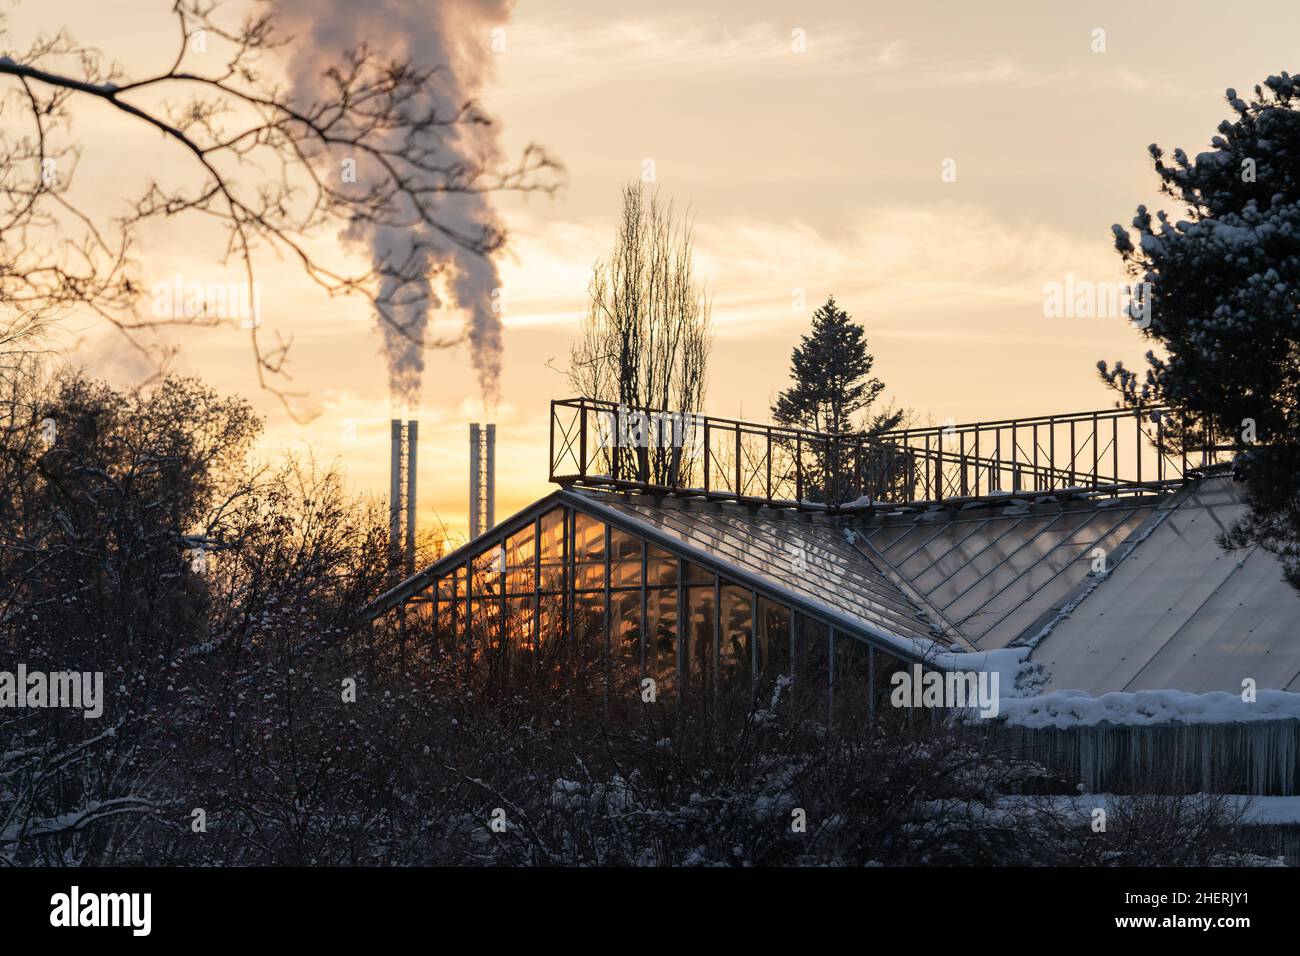 Serra costruzione in giardino d'inverno contro fumo camini di caldaia impianto al tramonto Foto Stock